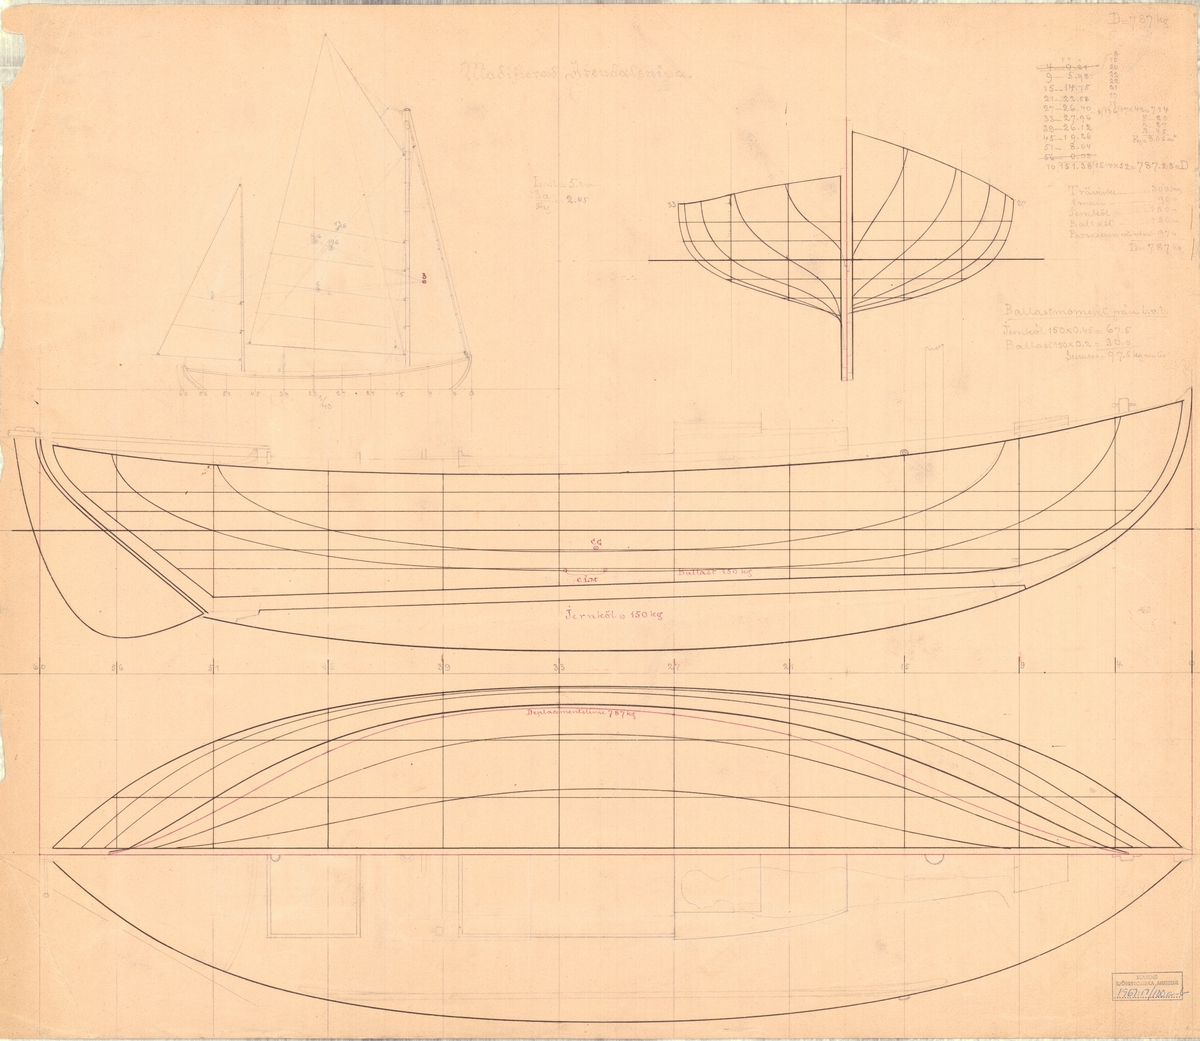 Modifierad Arendalssnipa, tvåmastad segelbåt.
spantruta, rigg-, profil- och linjeritning